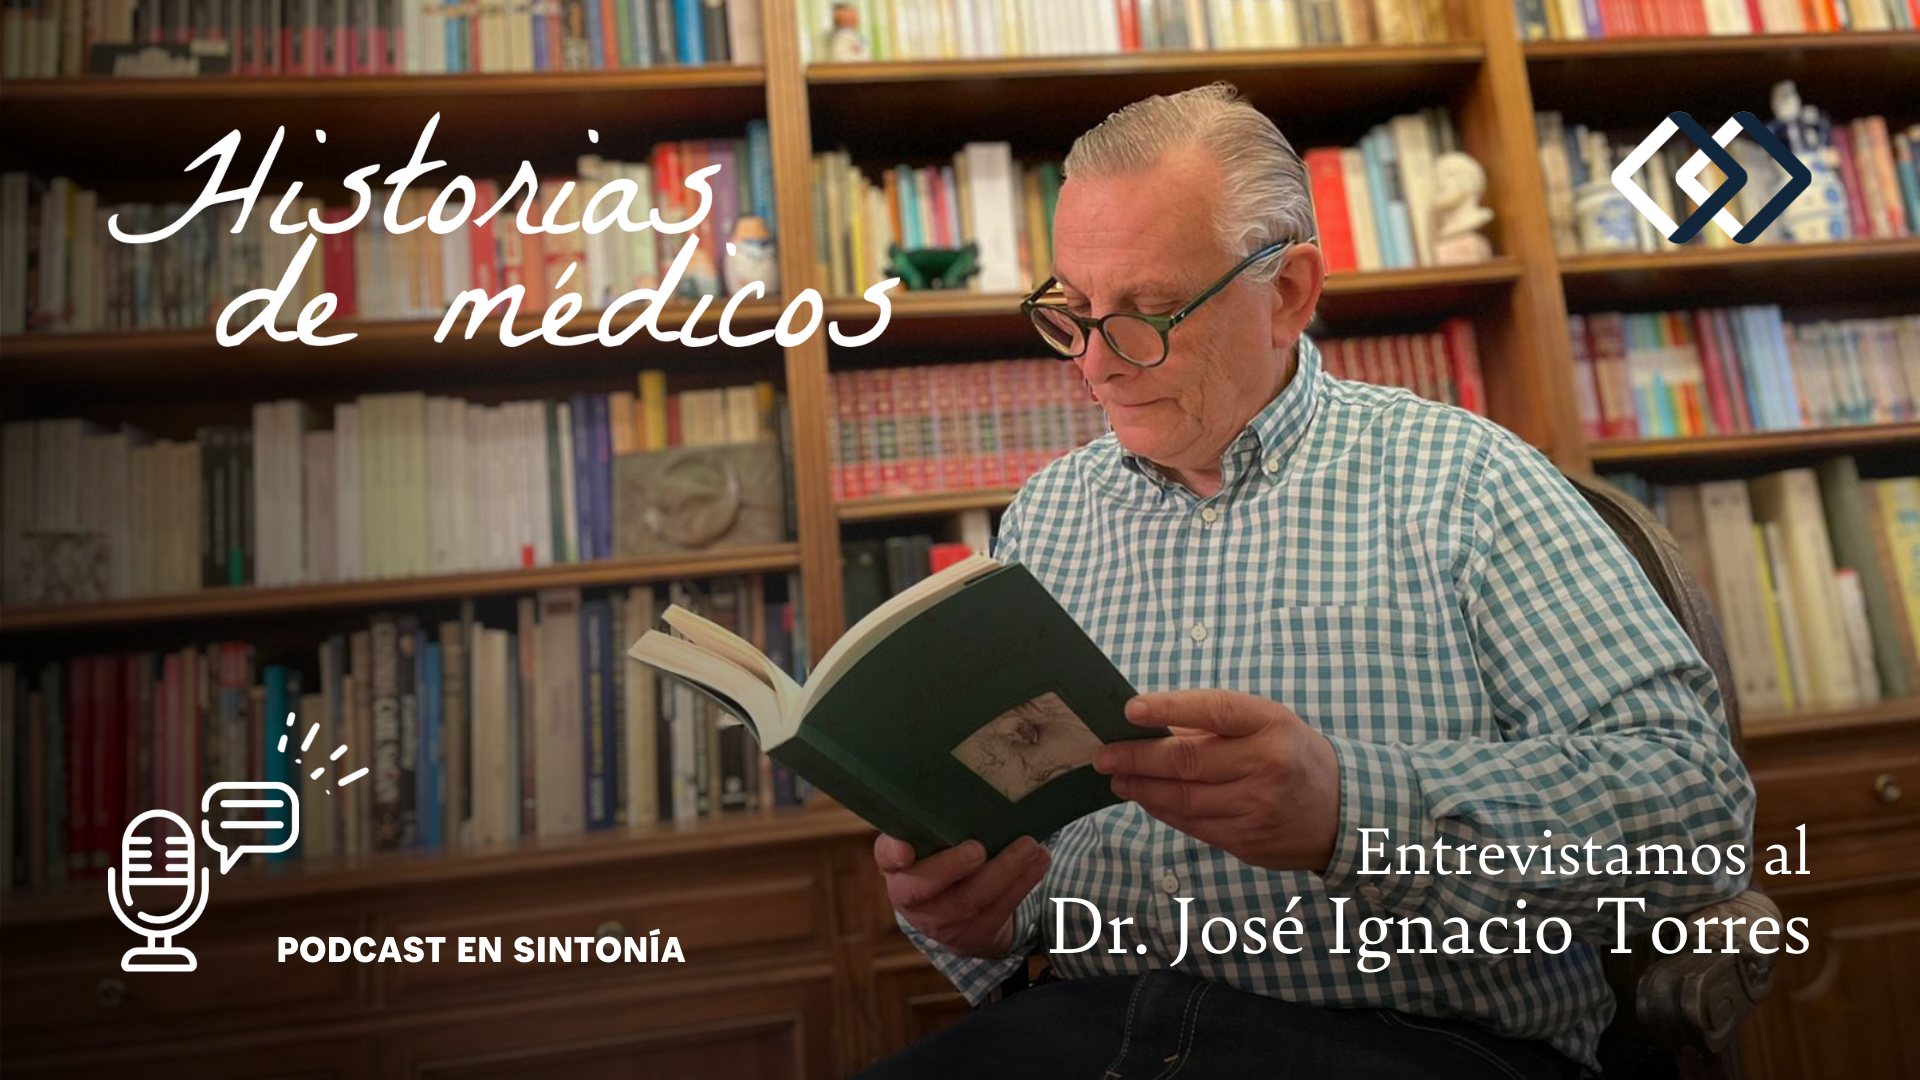 Entrevistamos al Dr. José Ignacio Torres